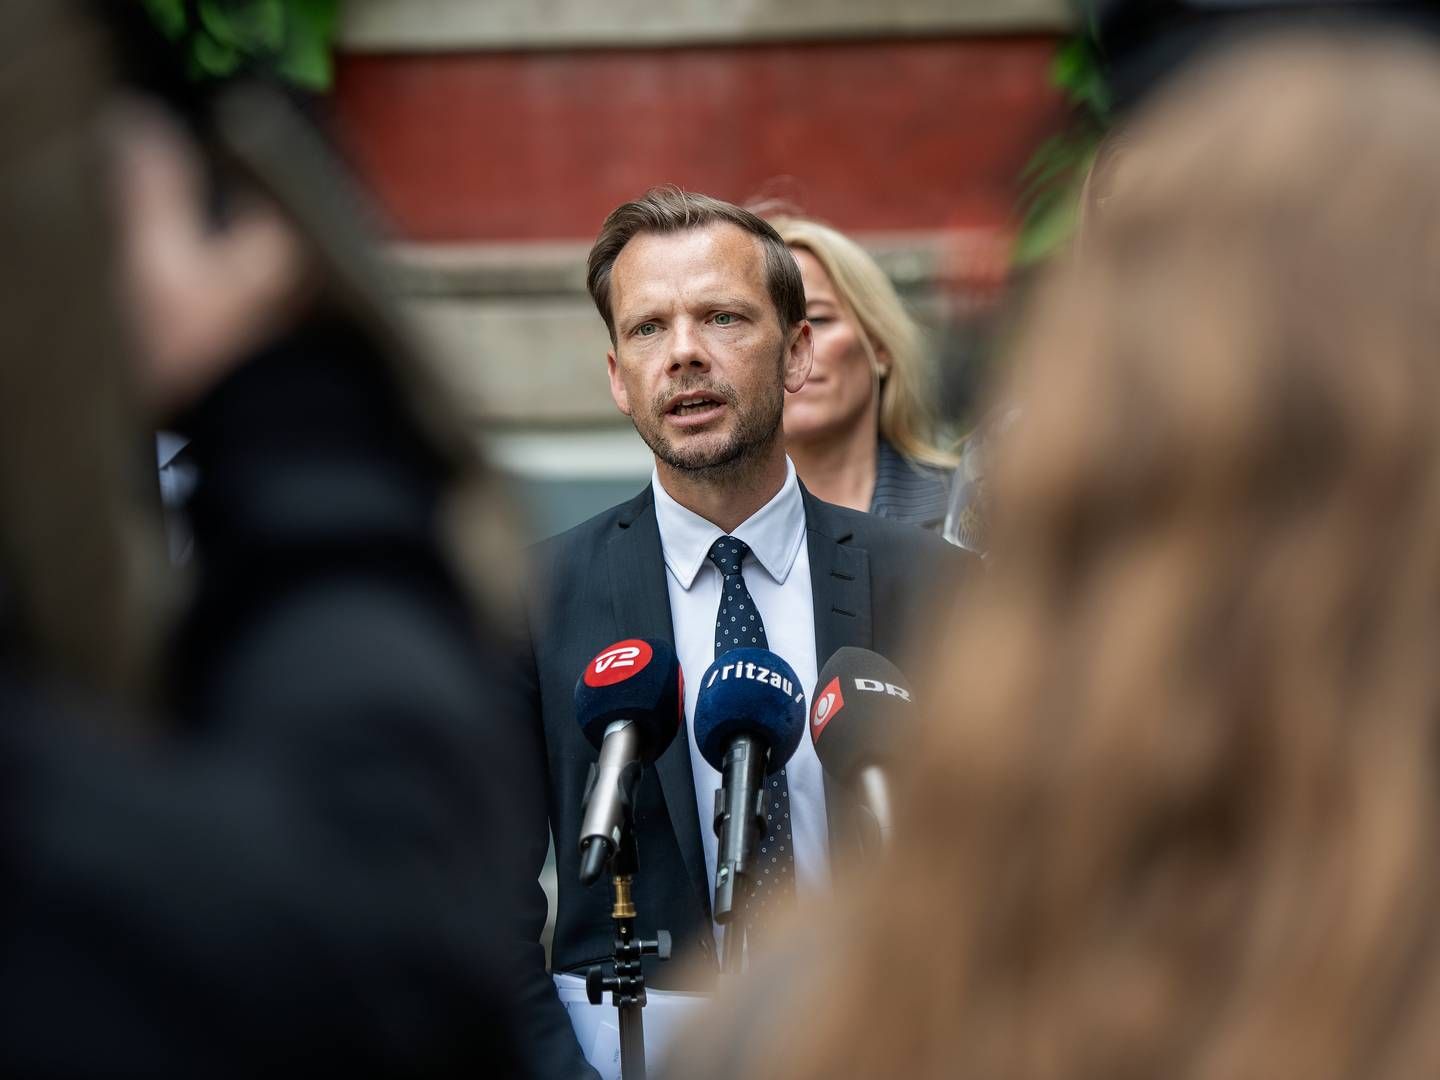 Justitsminister Peter Hummelgaard (S) har tidligere givet udtryk for, at der ville blive taget stilling til det ”videre forløb”, når arbejdet engang skulle genoptages. | Photo: Thomas Sjørup